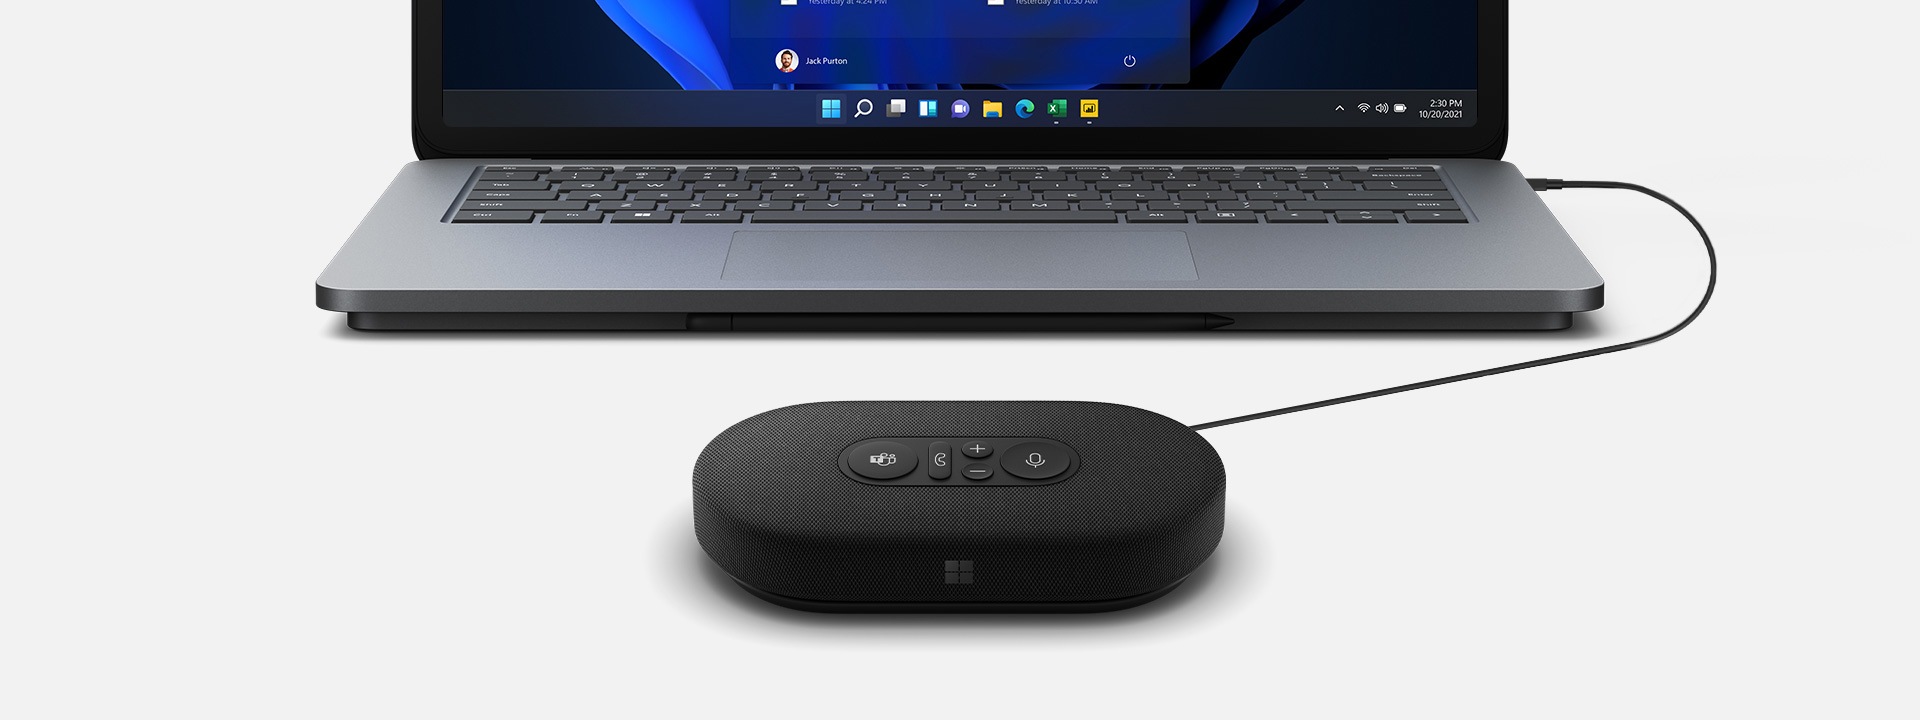 插入到后面 Surface 设备上的 Microsoft USB-C 会议全向麦克风的图像